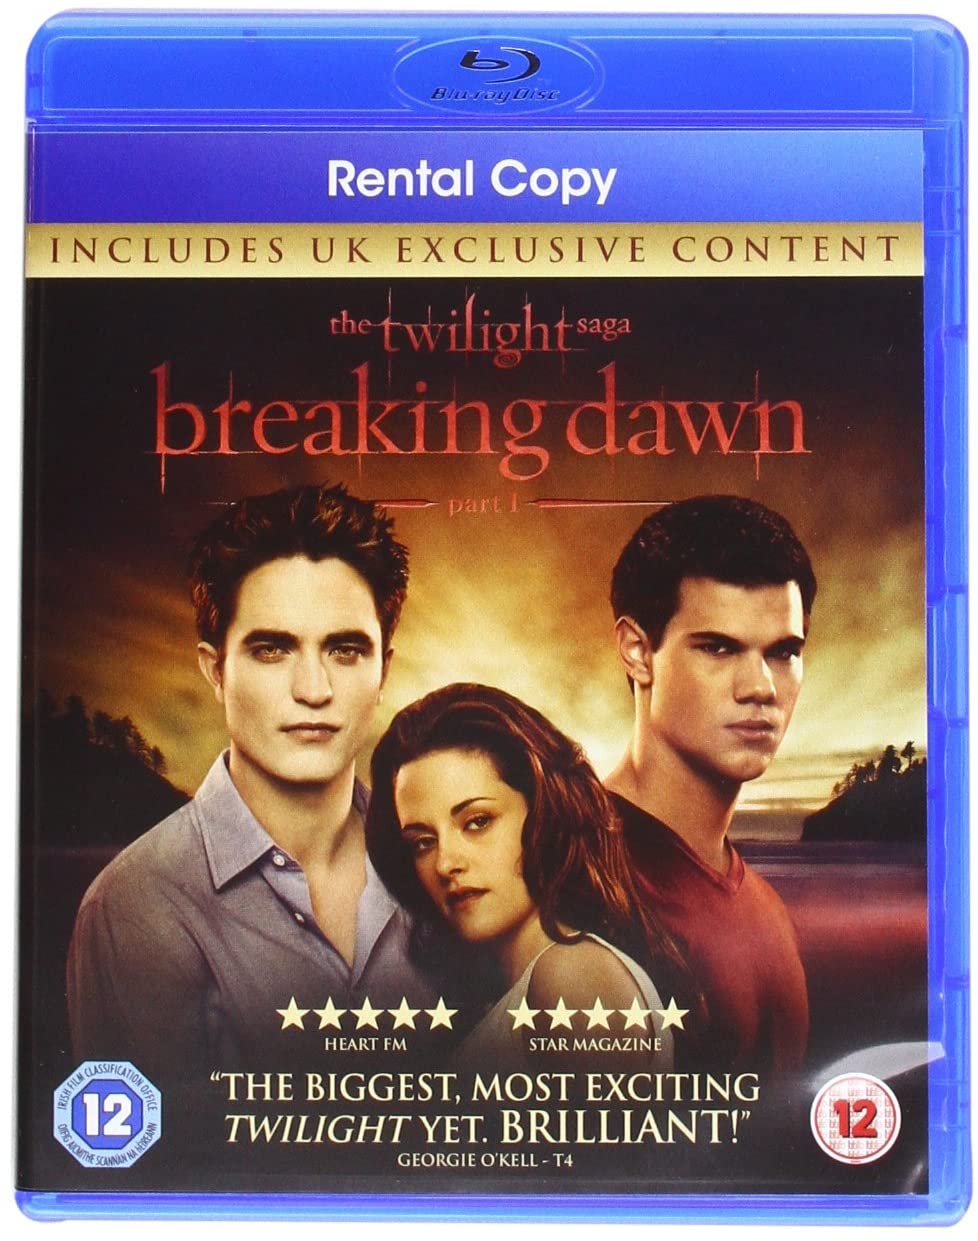 The Twilight Saga: Breaking Dawn - Part 1 [2011] (Blu-ray)